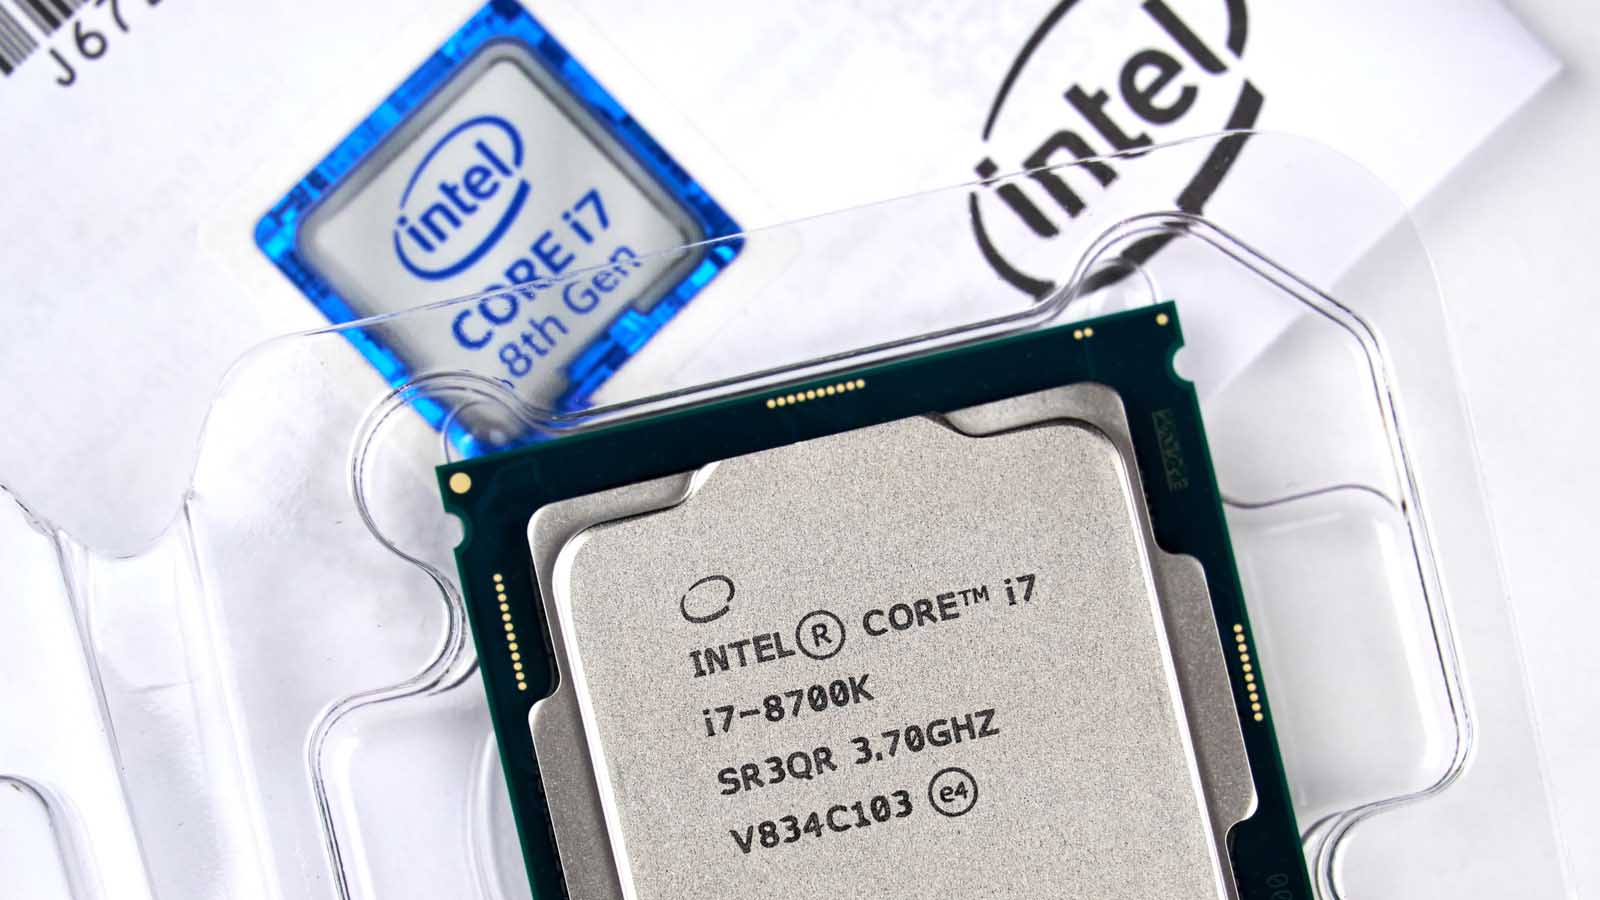 Intel işlemci üretimi için Samsung ile anlaşacak